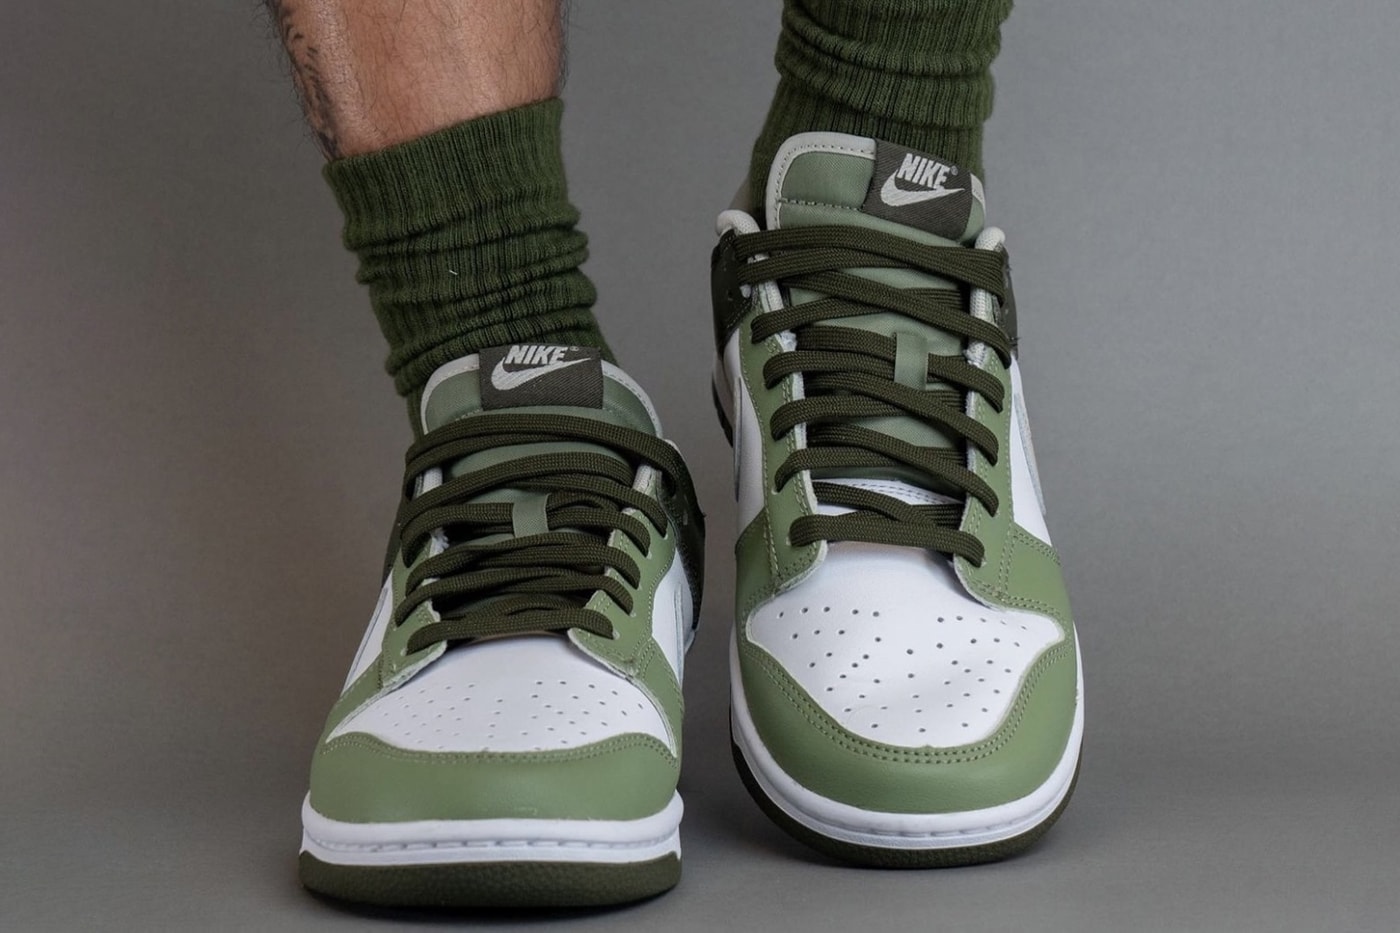 ナイキダンクローからミリタリーテイストな新色モデル “オイルグリーン”が登場 On-Feet Look at the Nike Dunk Low "Oil Green" FN6882-100 White/Light Bone-Oil Green-Cargo Khaki release info 